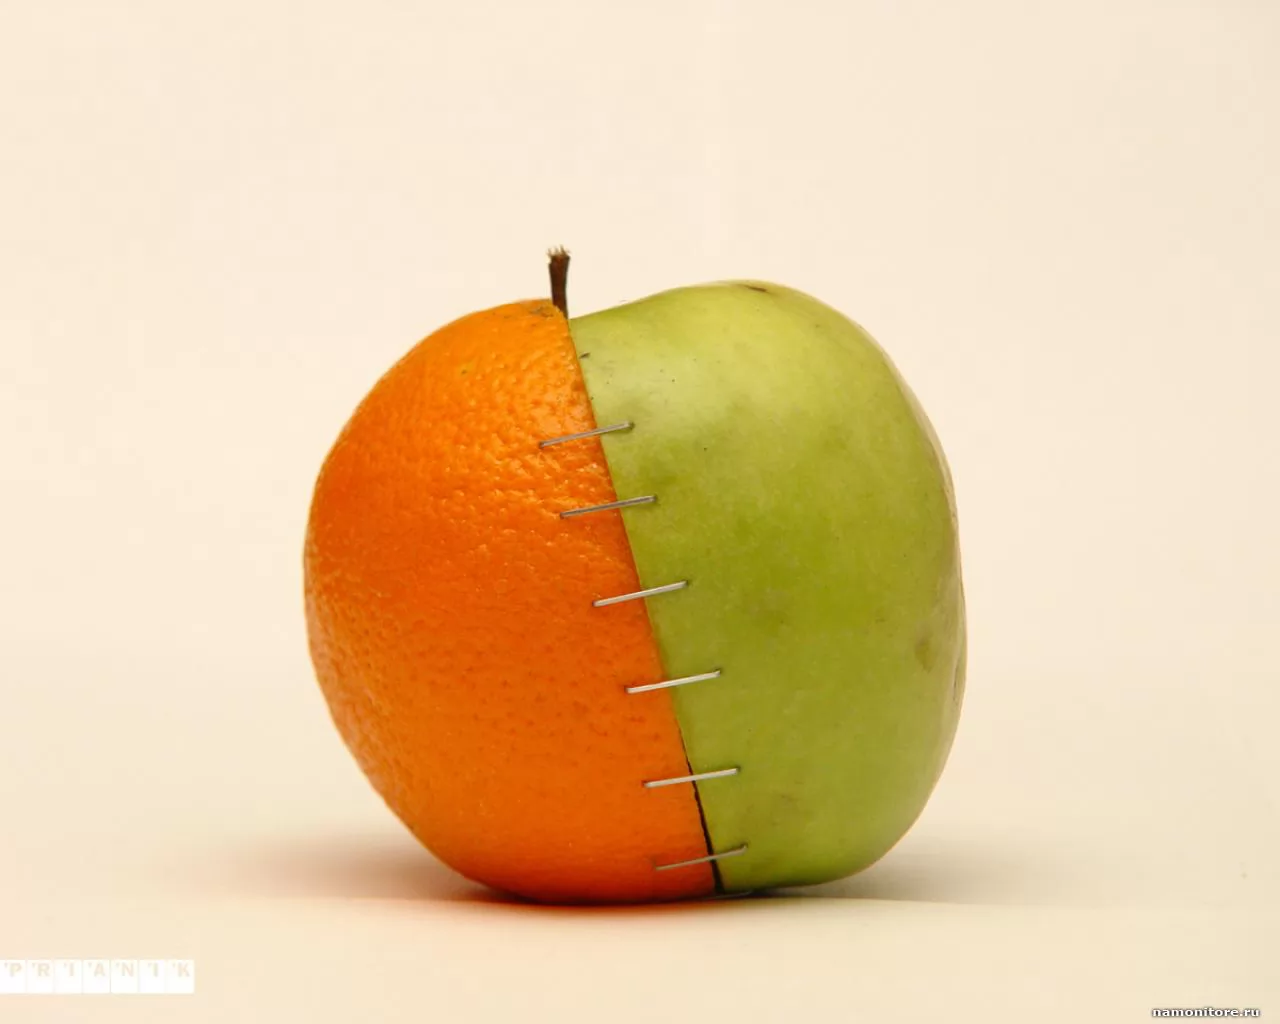 Яблоко vs апельсин, лучшее, фрукты, юмор х